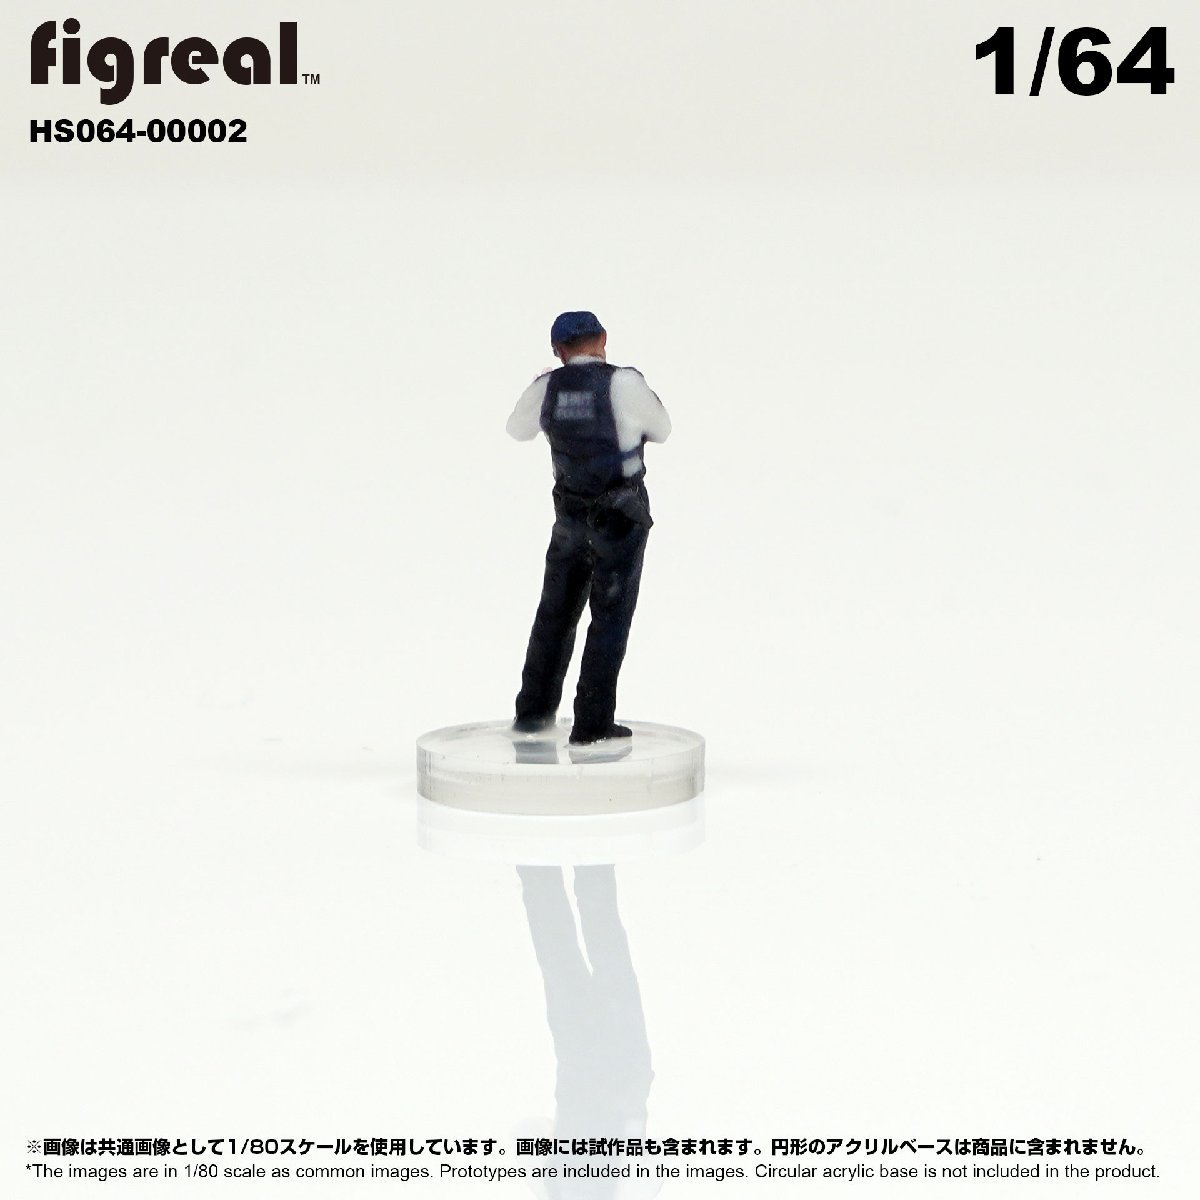 HS064-00002 figreal Япония полиция .1/64 высокая четкость фигурка 